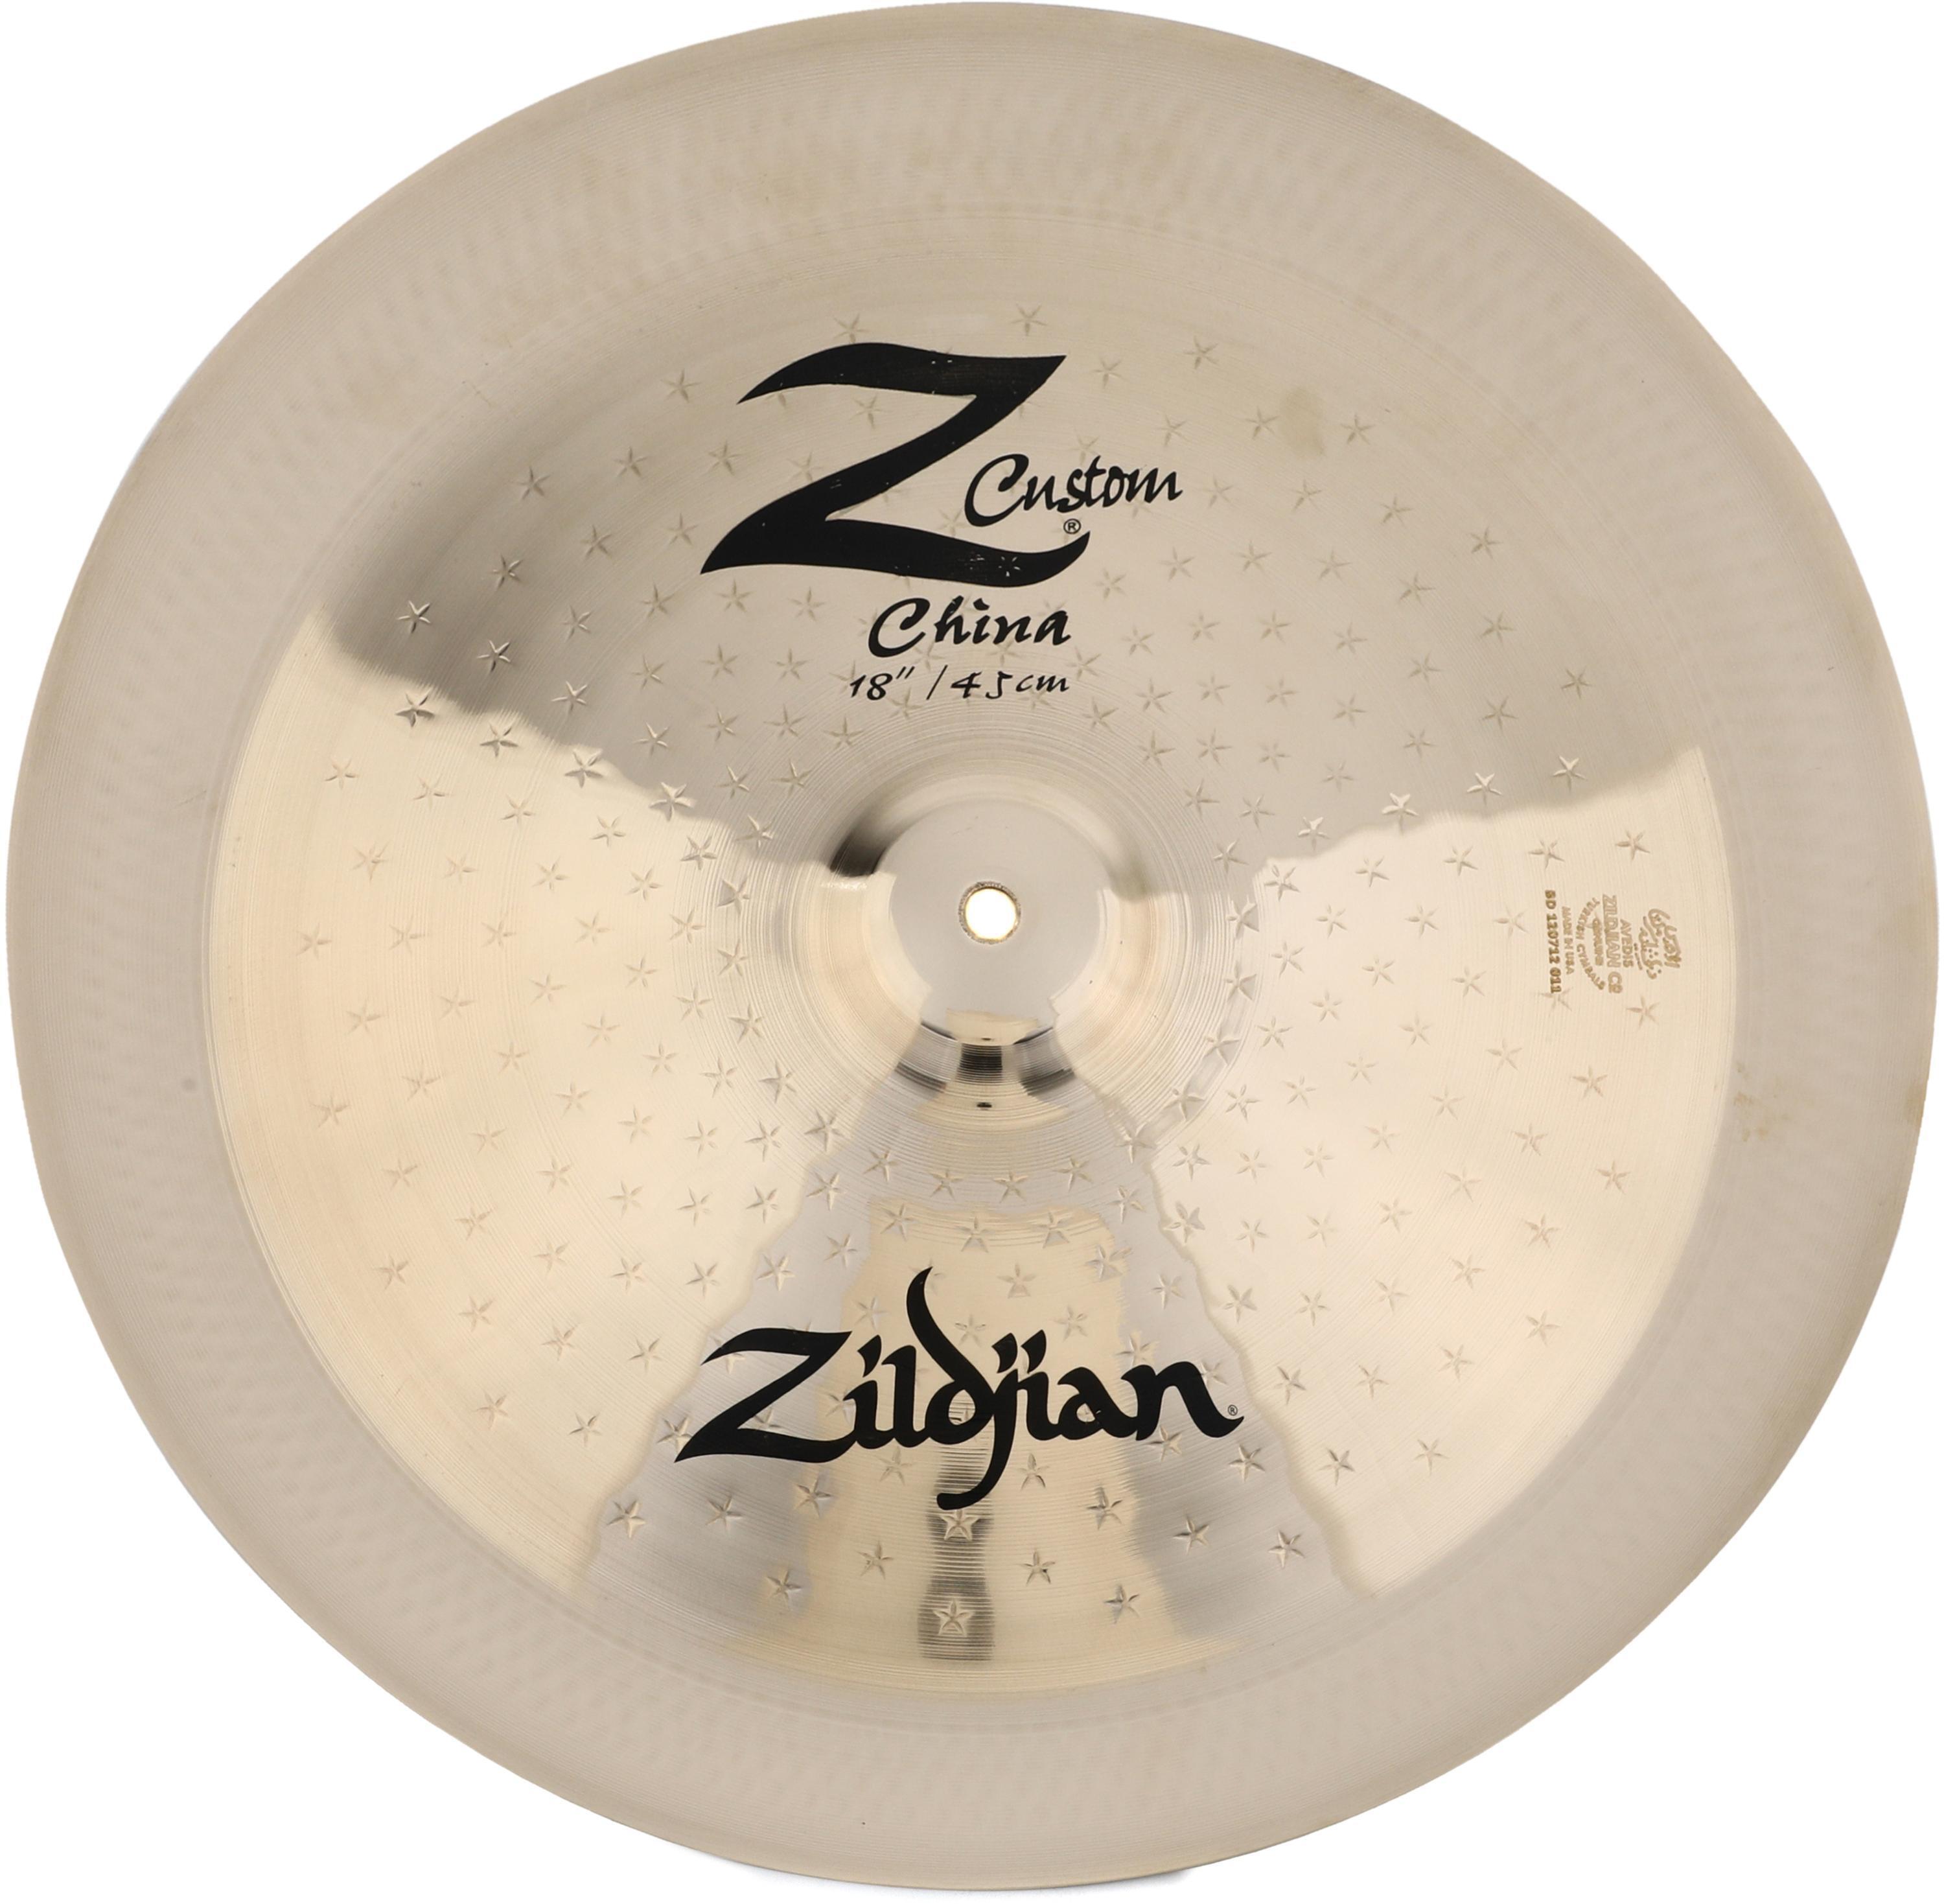 Zildjian Z Custom China Cymbal - 18 inch | Sweetwater